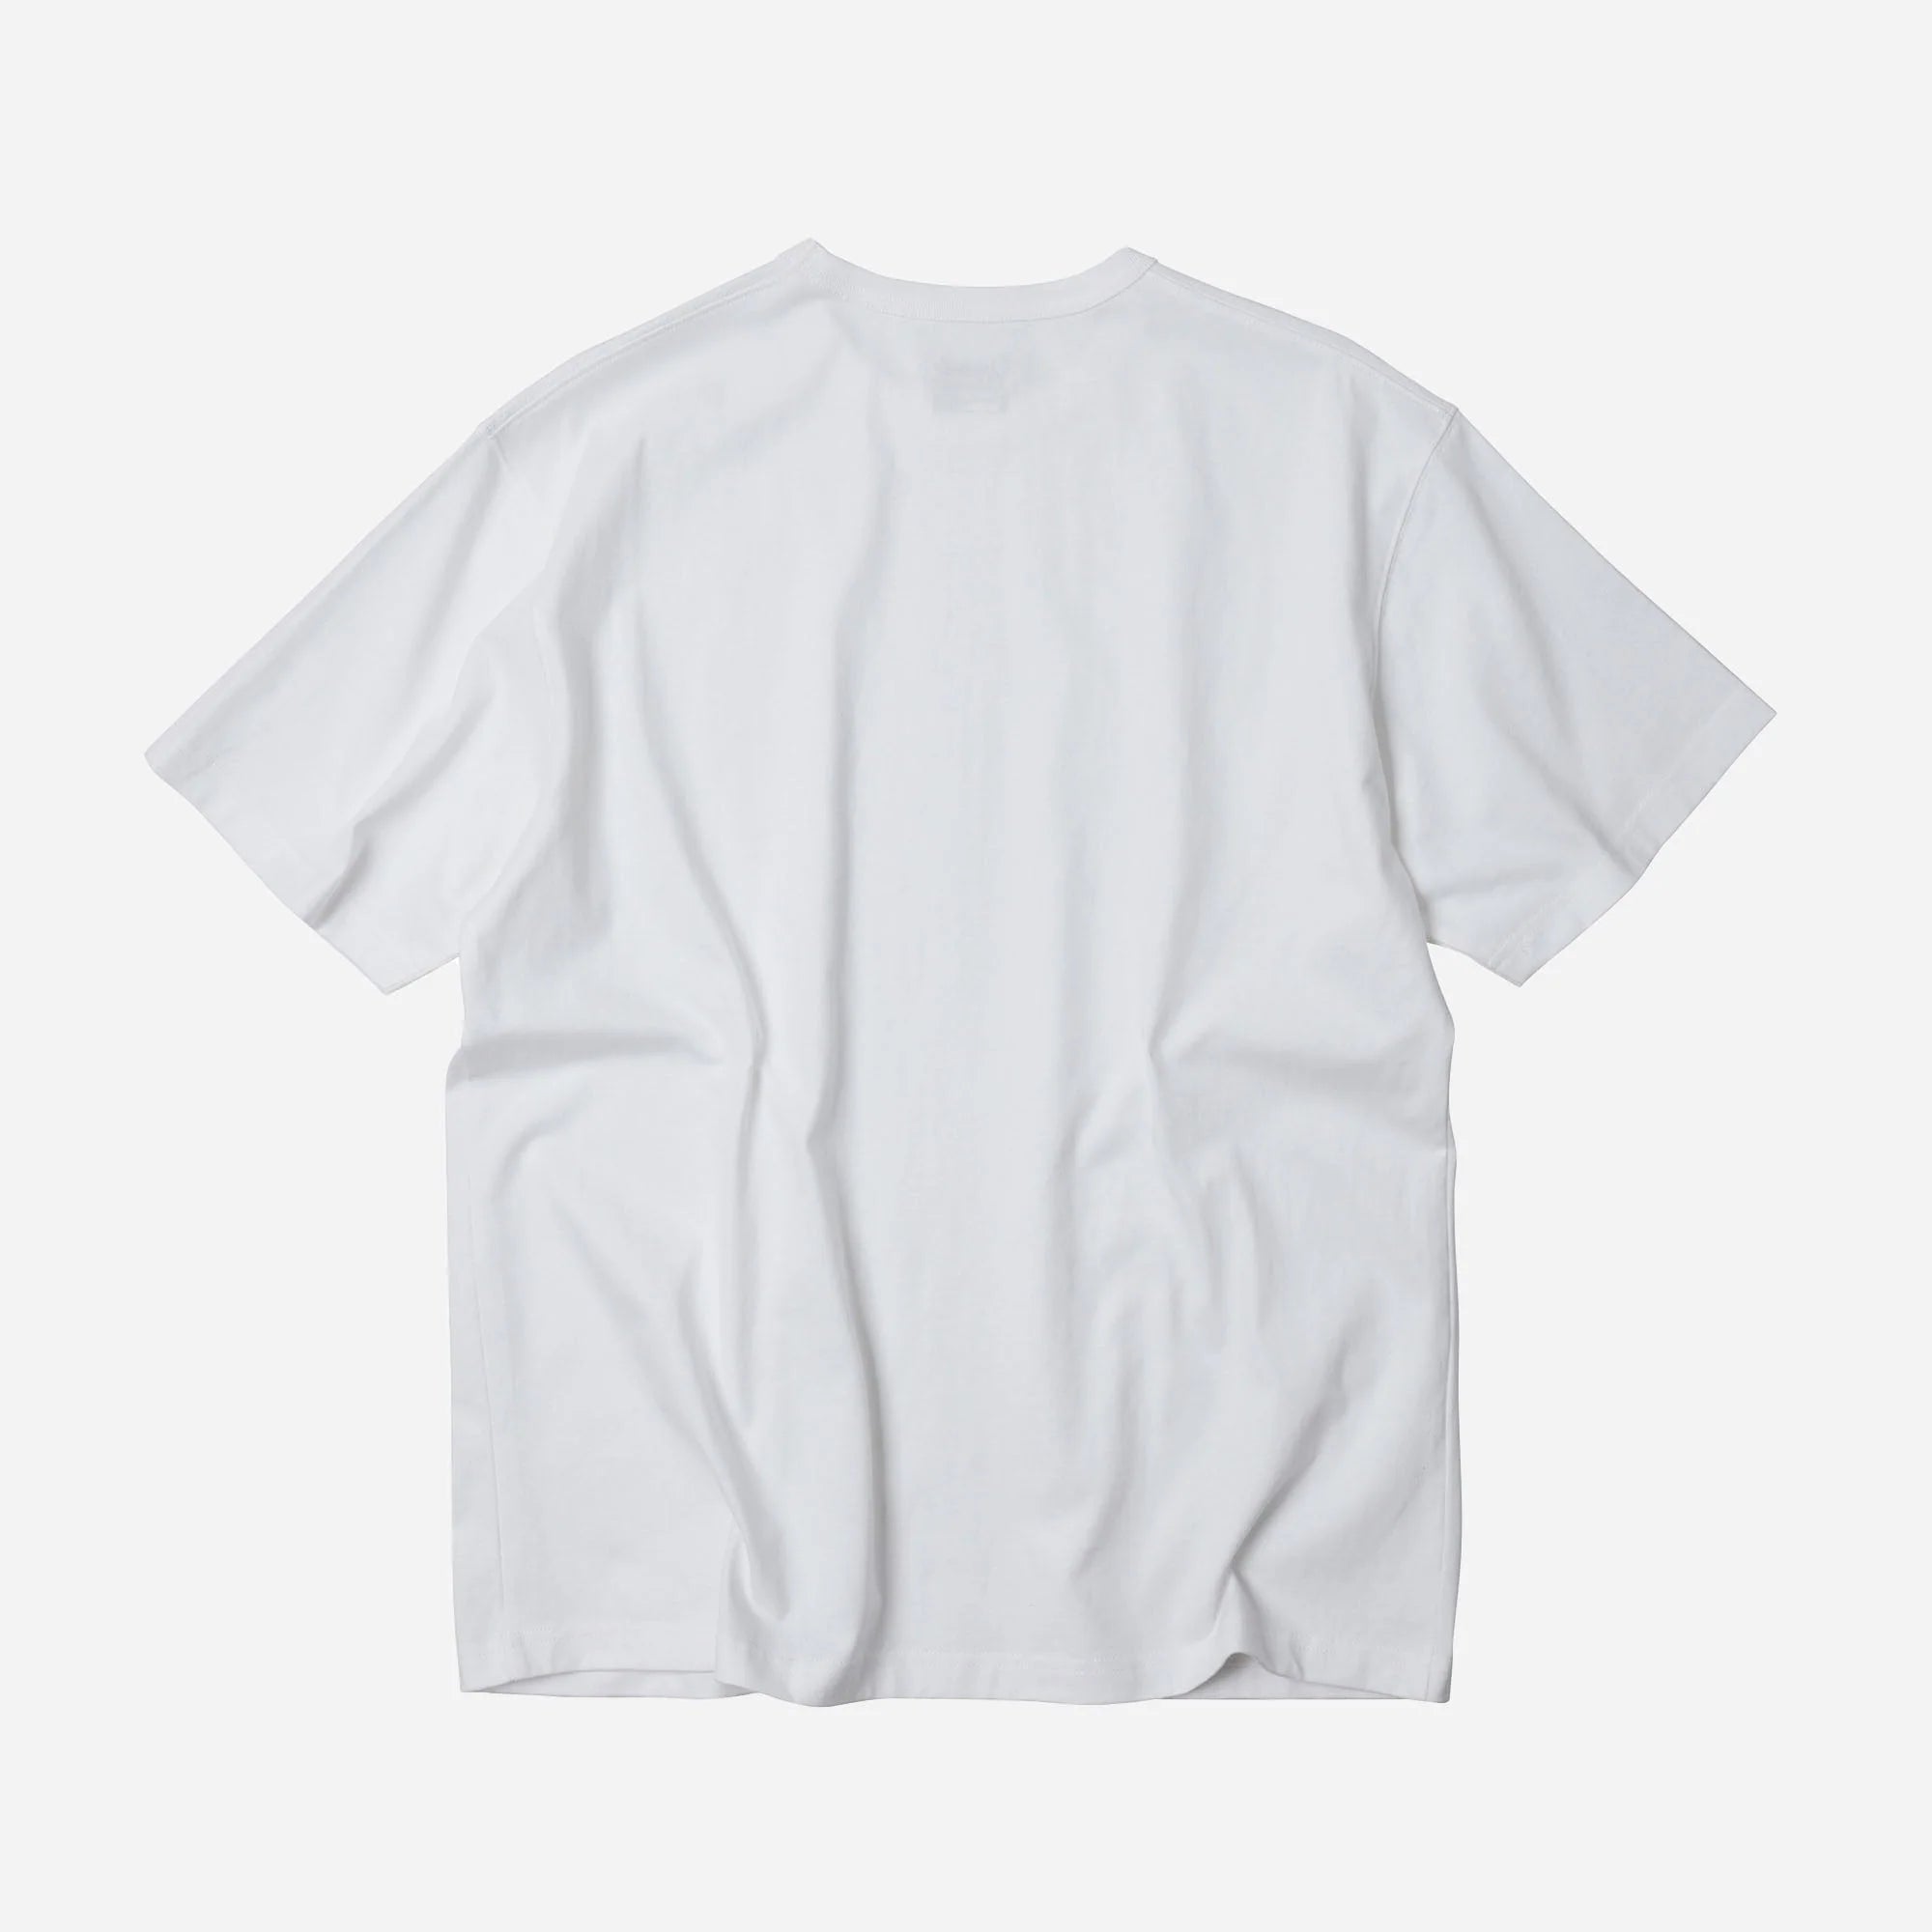 OG Athletic T-Shirt 2 Pack - White